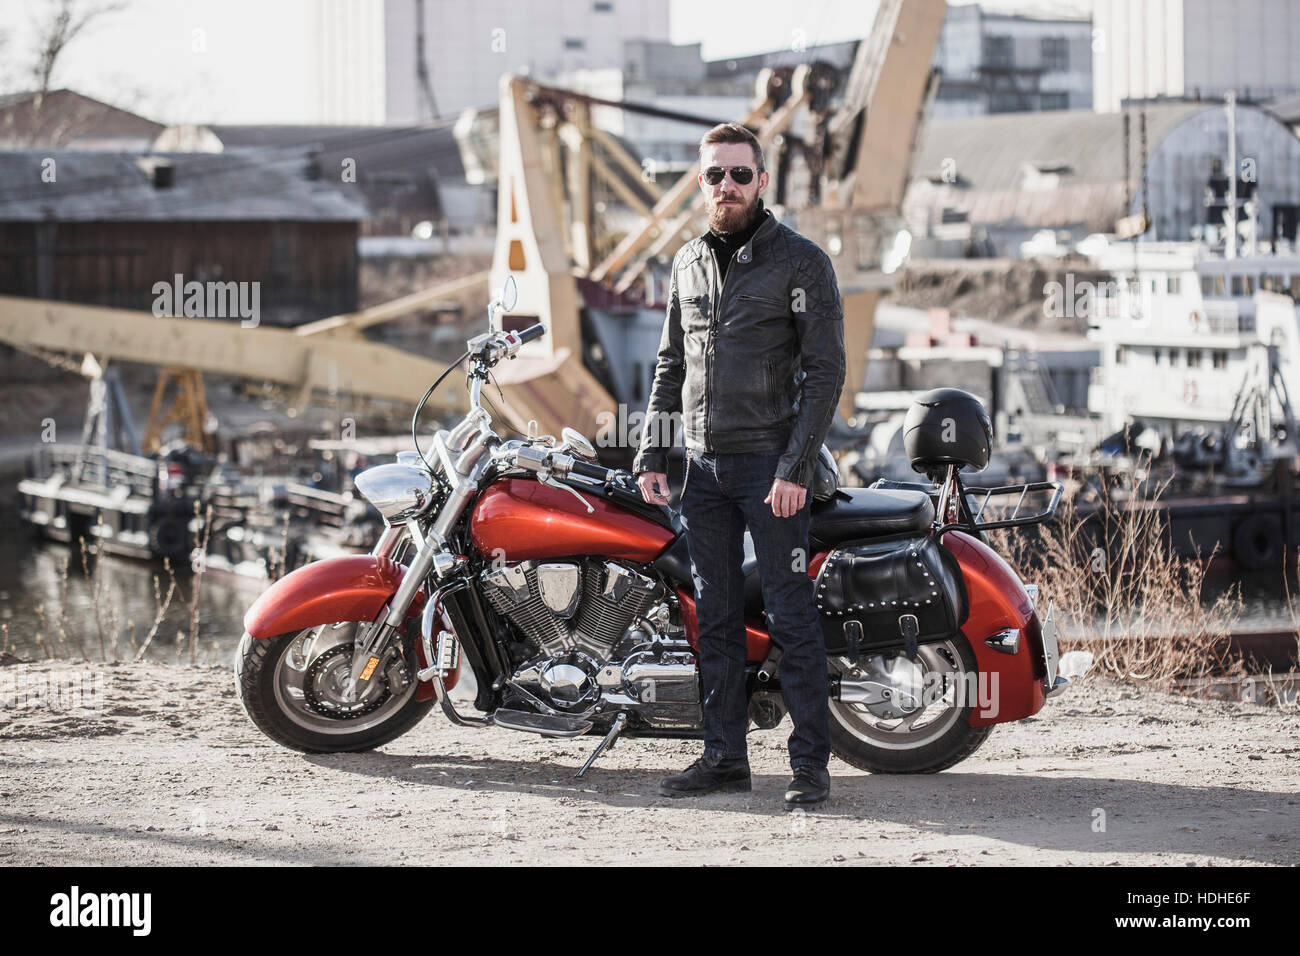 Portrait de biker moto par permanent contre l'environnement industriel Banque D'Images